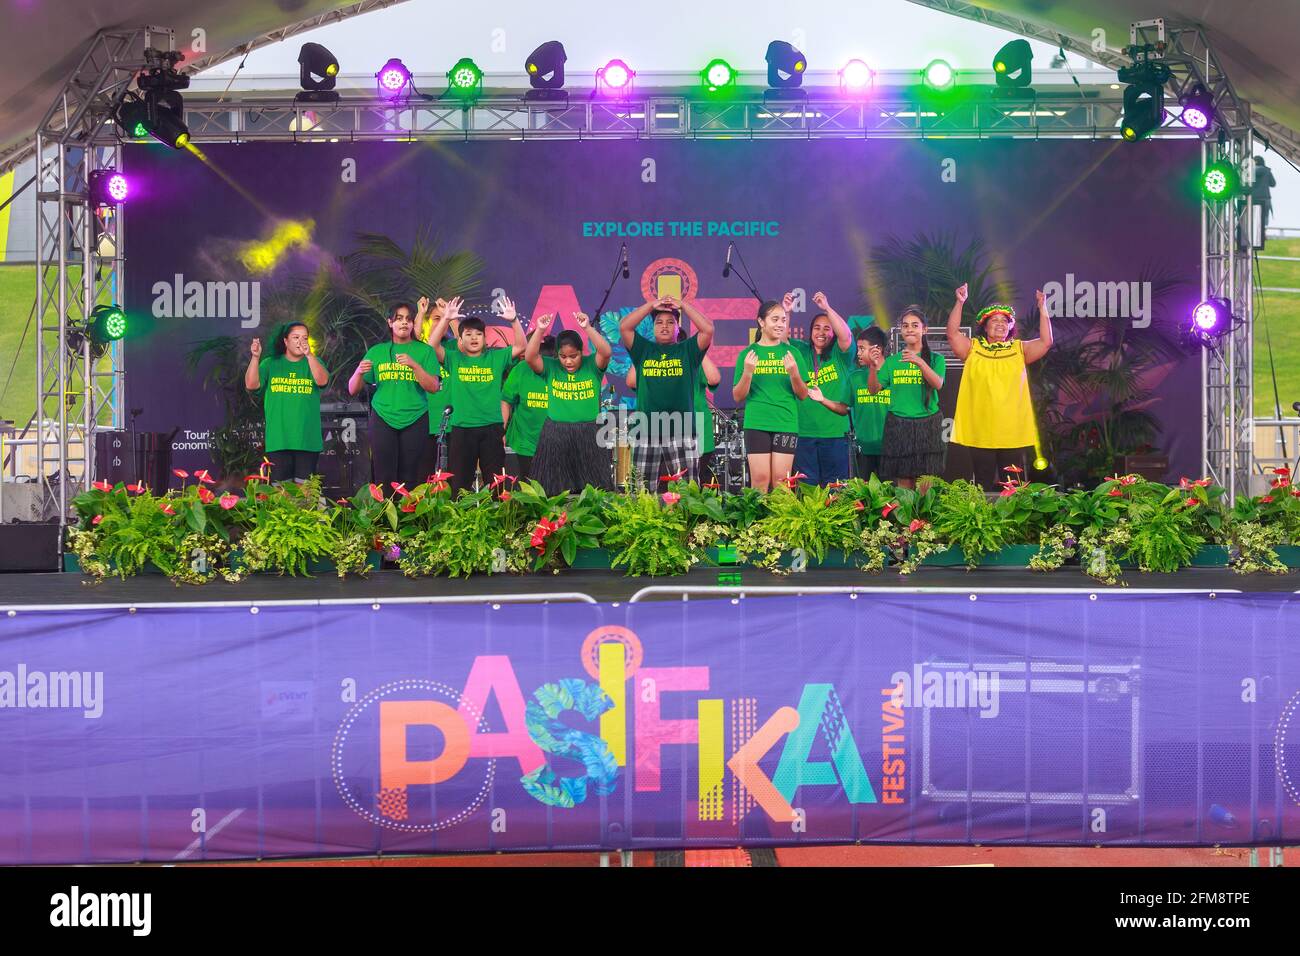 Un groupe de danseurs polynésiens des îles Tokalau qui se produisent sur scène lors du festival Pasifika, Auckland, Nouvelle-Zélande Banque D'Images